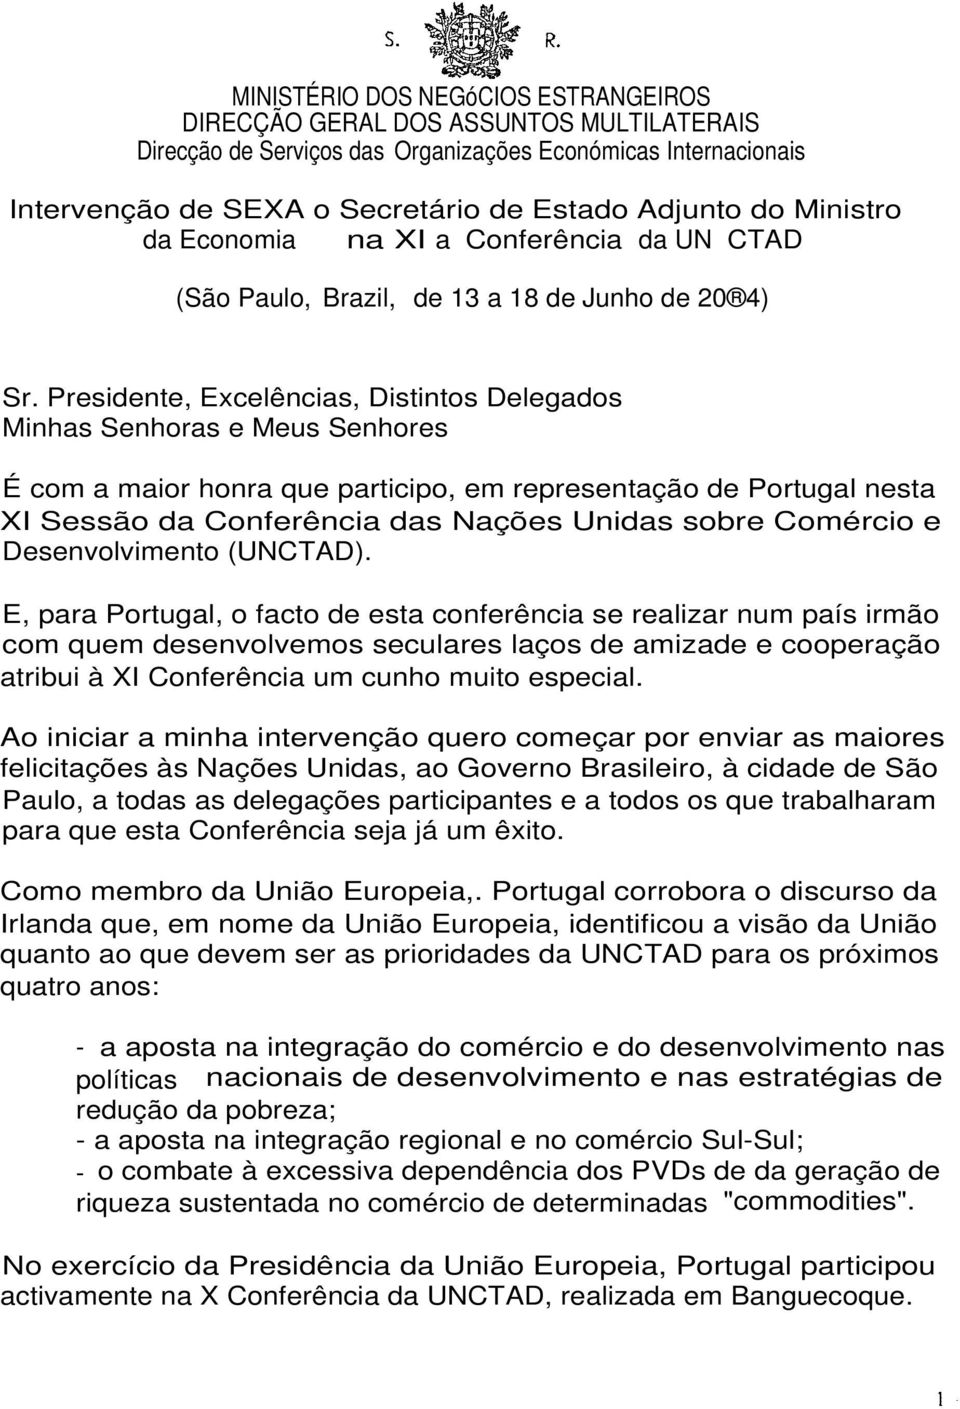 Presidente, Excelências, Distintos Delegados Minhas Senhoras e Meus Senhores É com a maior honra que participo, em representação de Portugal nesta XI Sessão da Conferência das Nações Unidas sobre